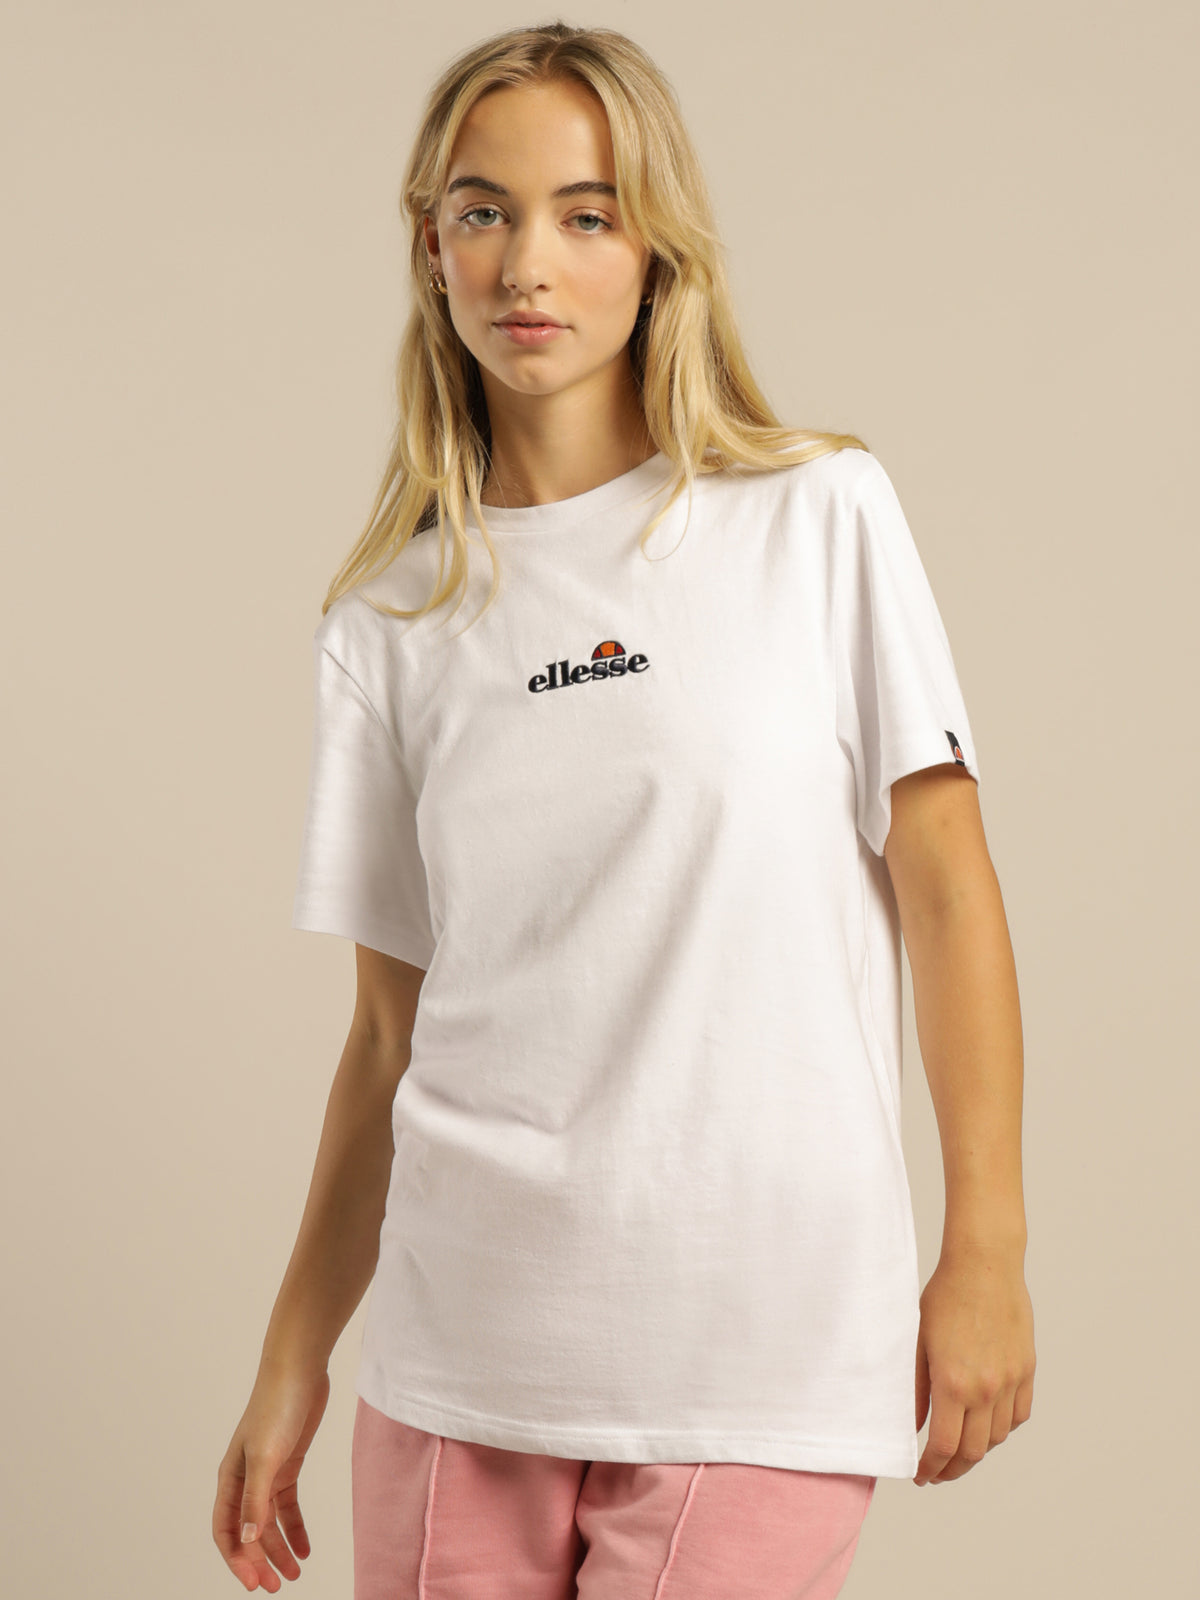 Abrita T-Shirt in White